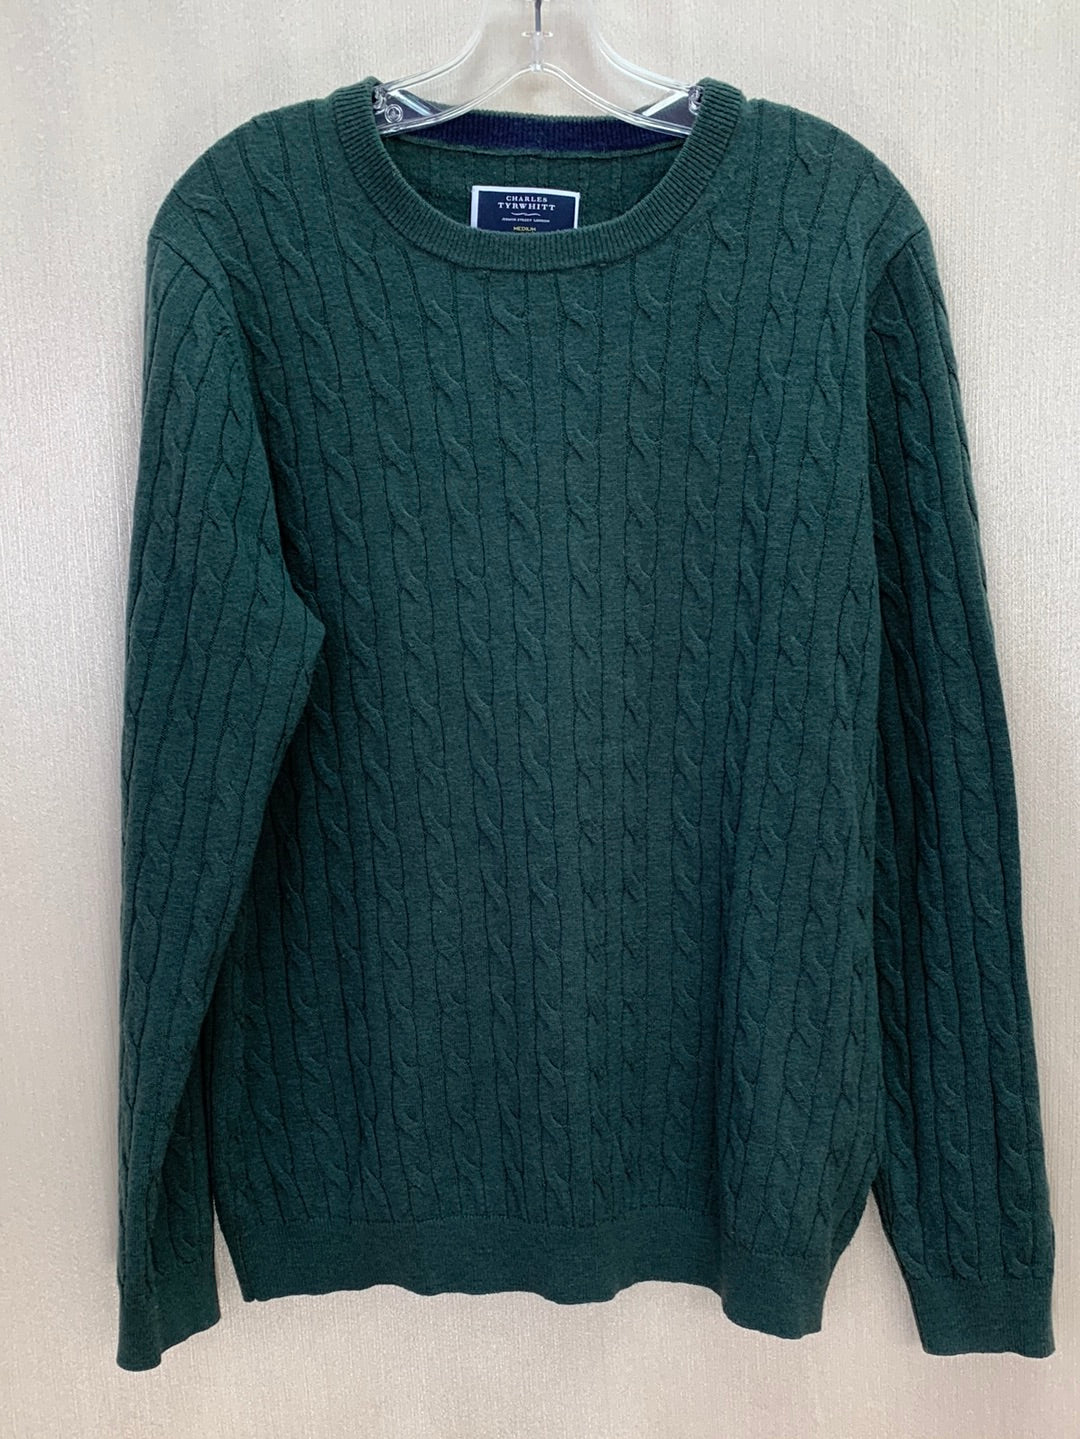 CHARLES TYRWHITT dark green Lambs Wool Sweater - M